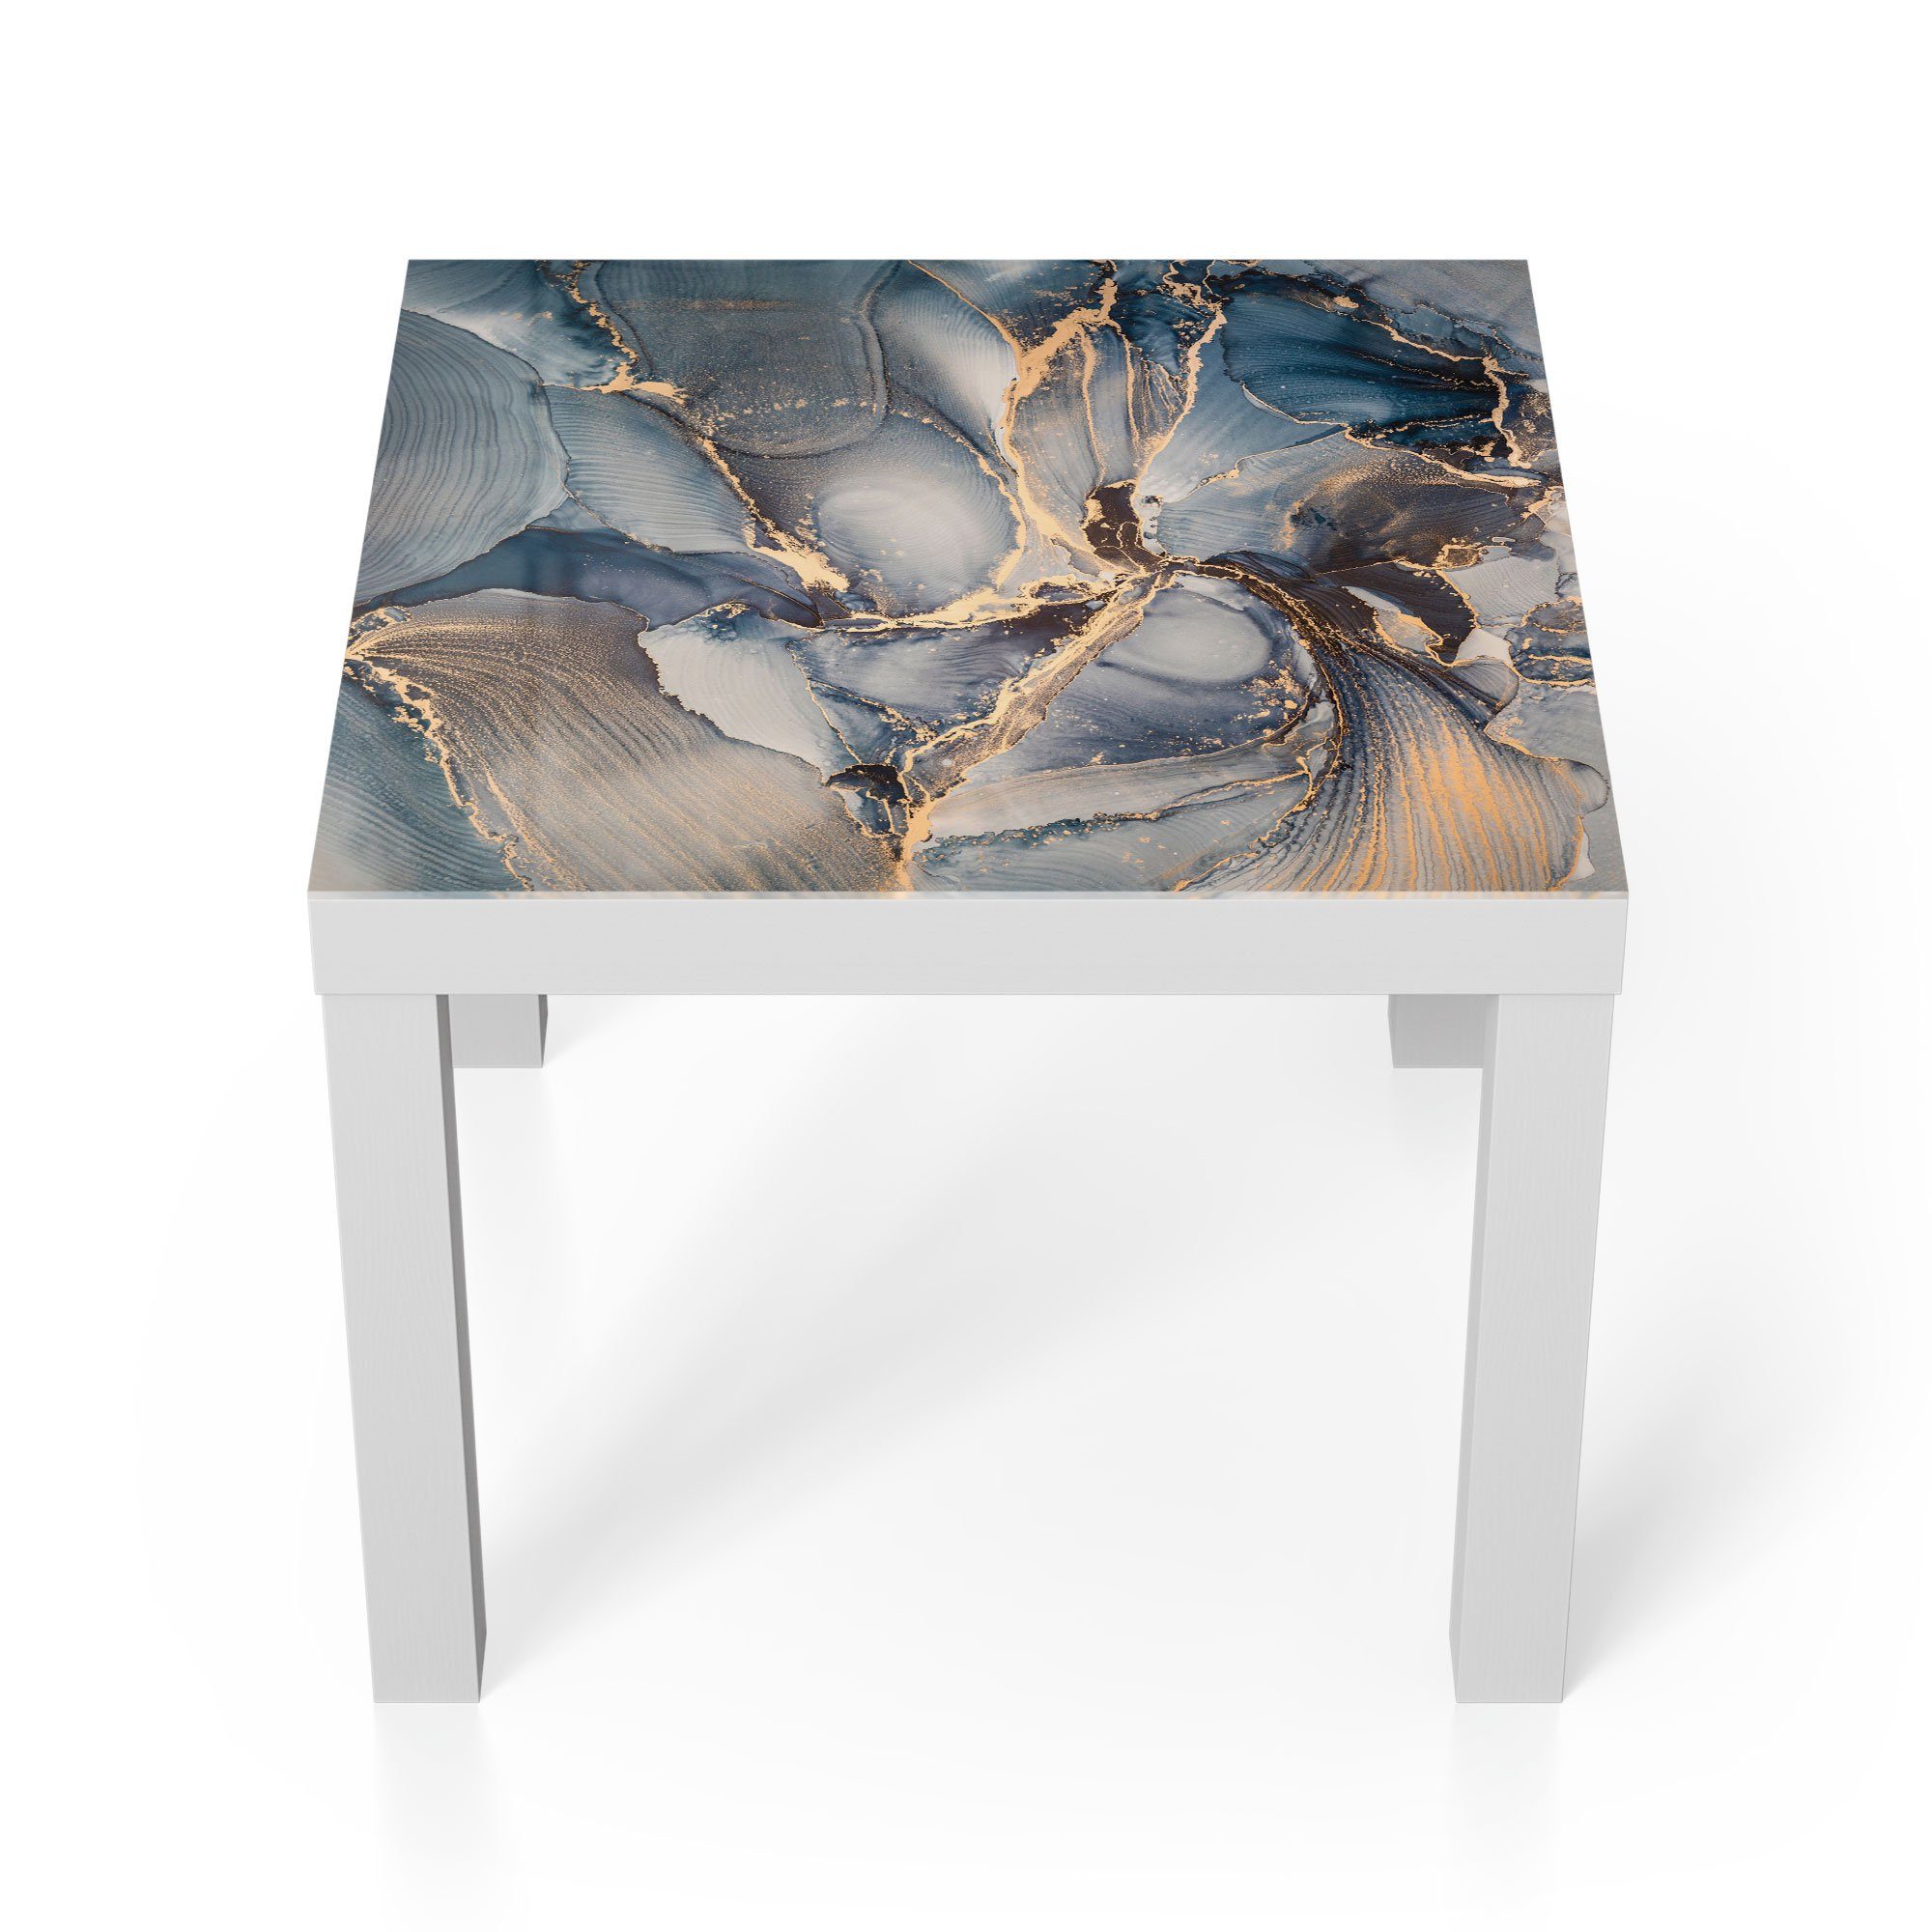 DEQORI Couchtisch 'Marmor-Farbspiel mit Gold', Glas Beistelltisch Glastisch modern Weiß